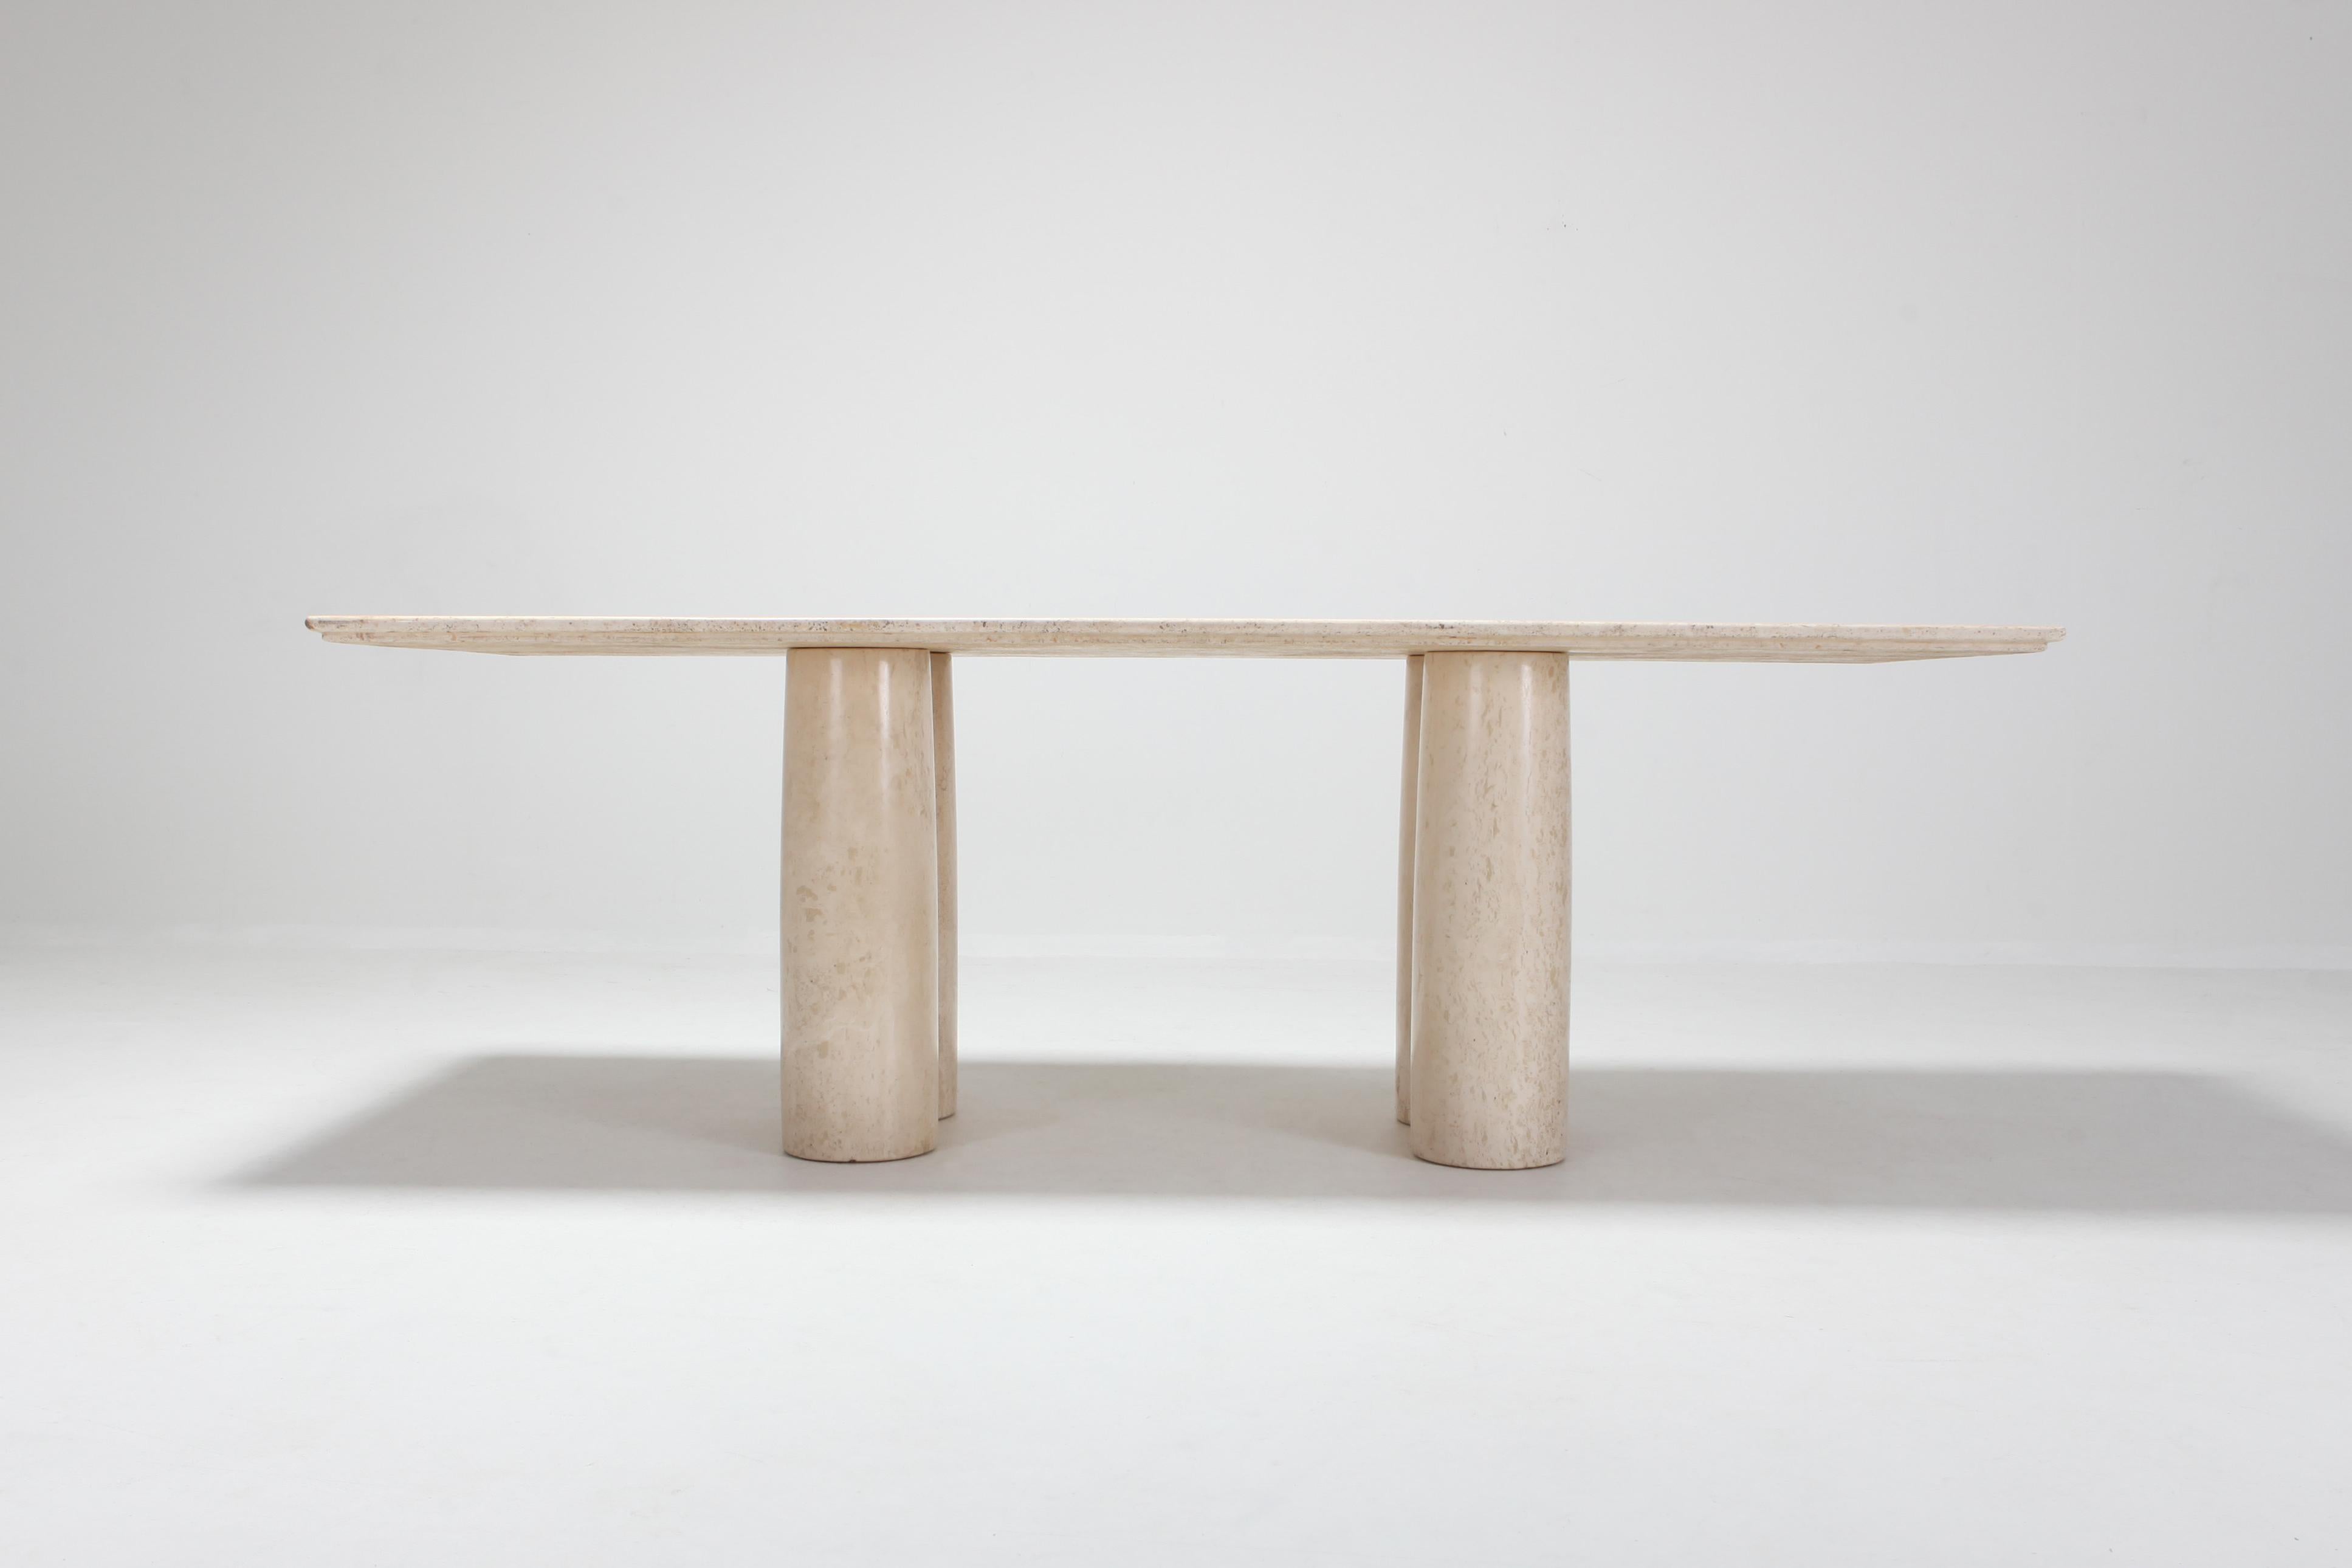 Post-Modern Travertine Dining Table by Mario Bellini 'Il colonnato'